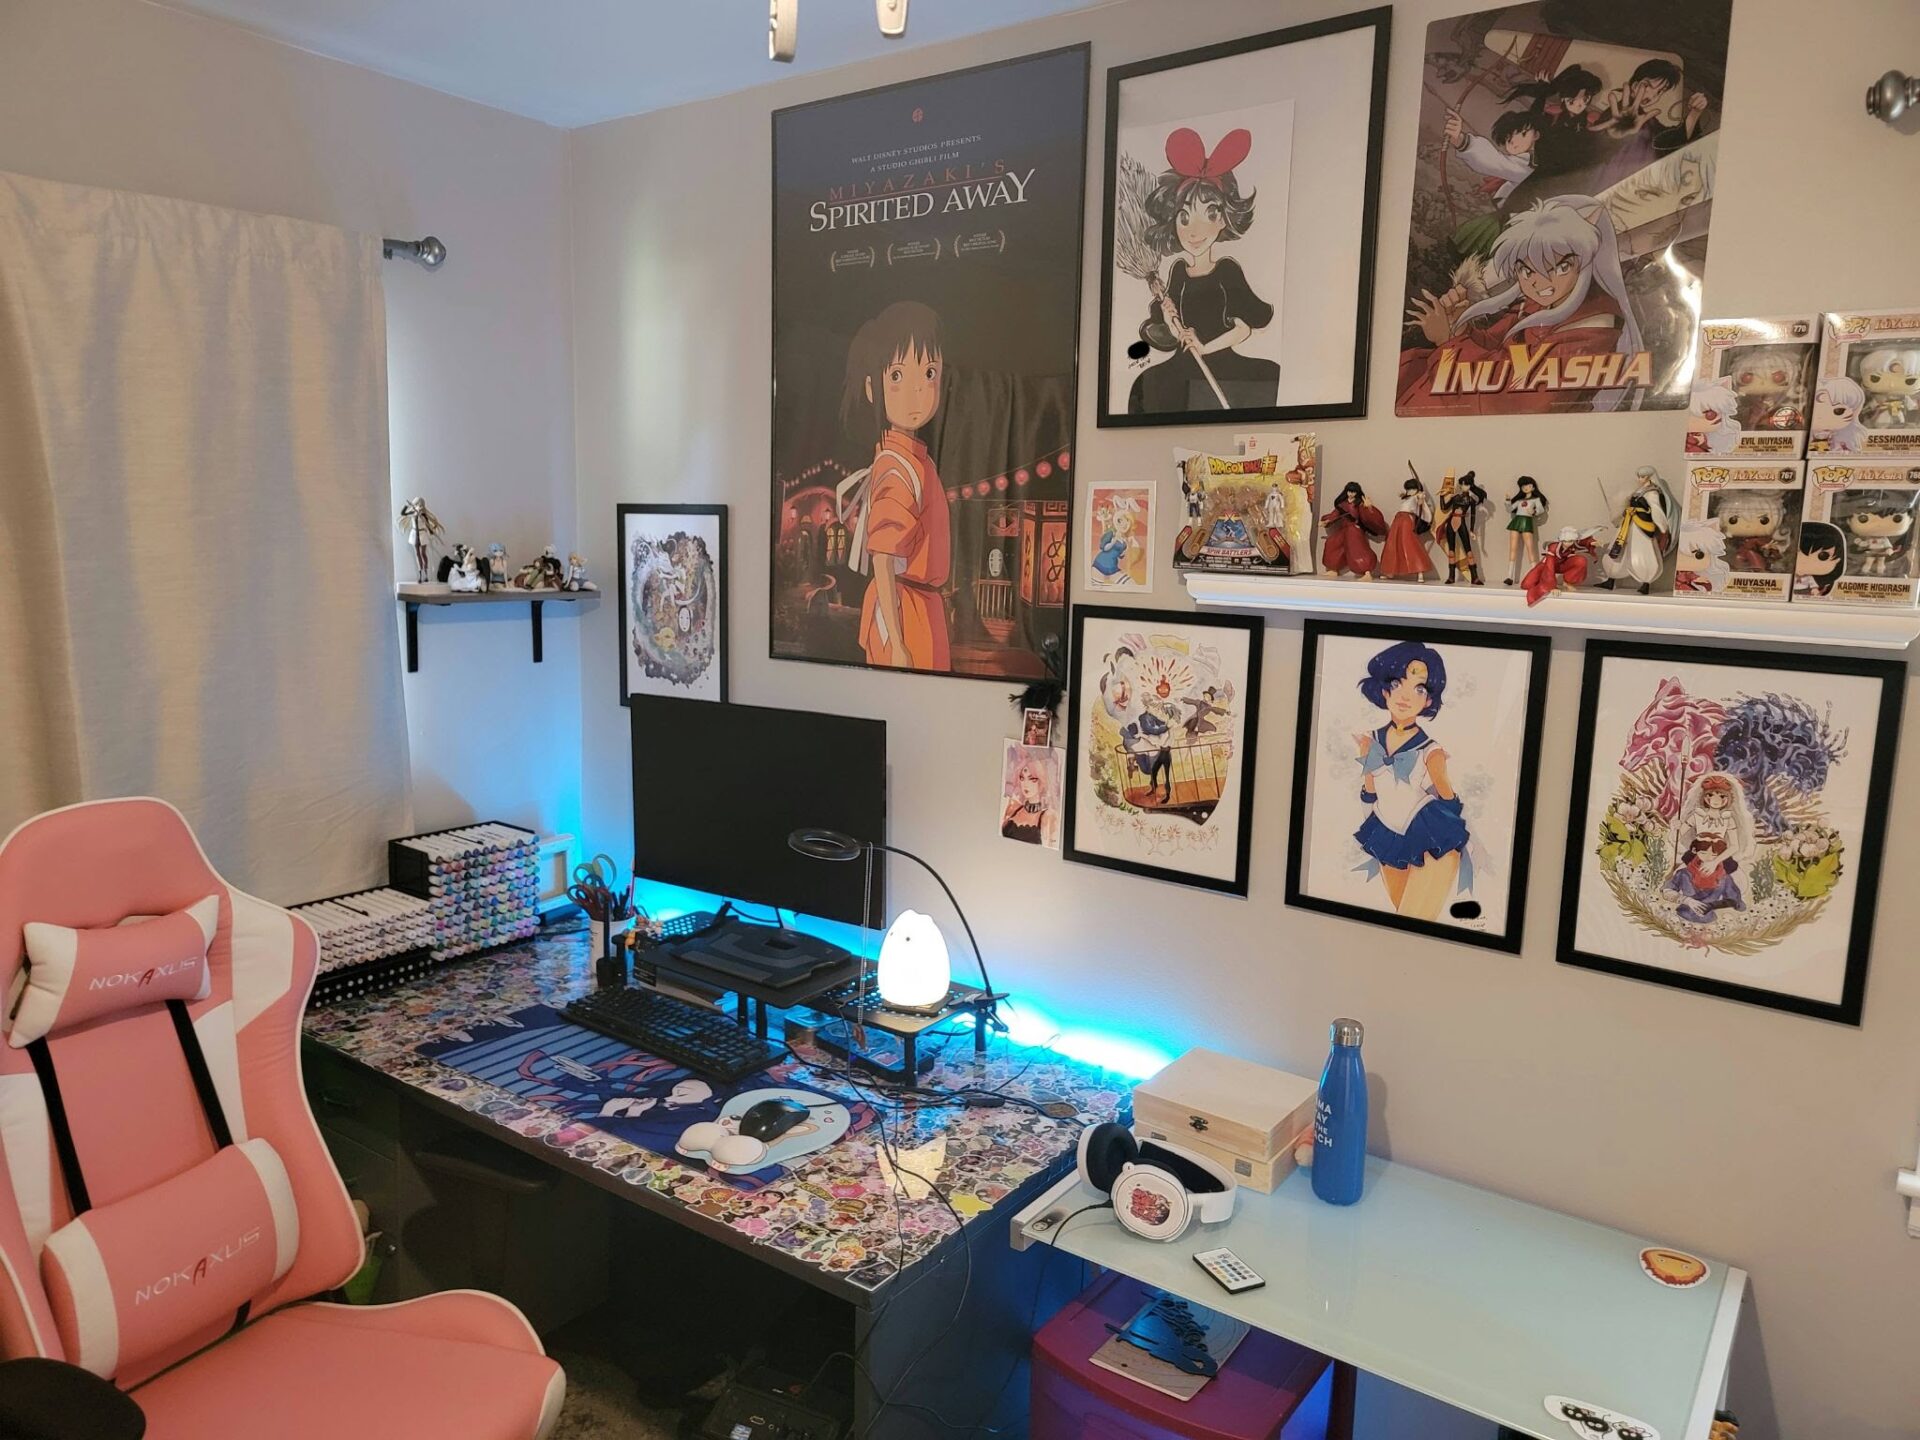 Anime Gamer Room Wallpapers